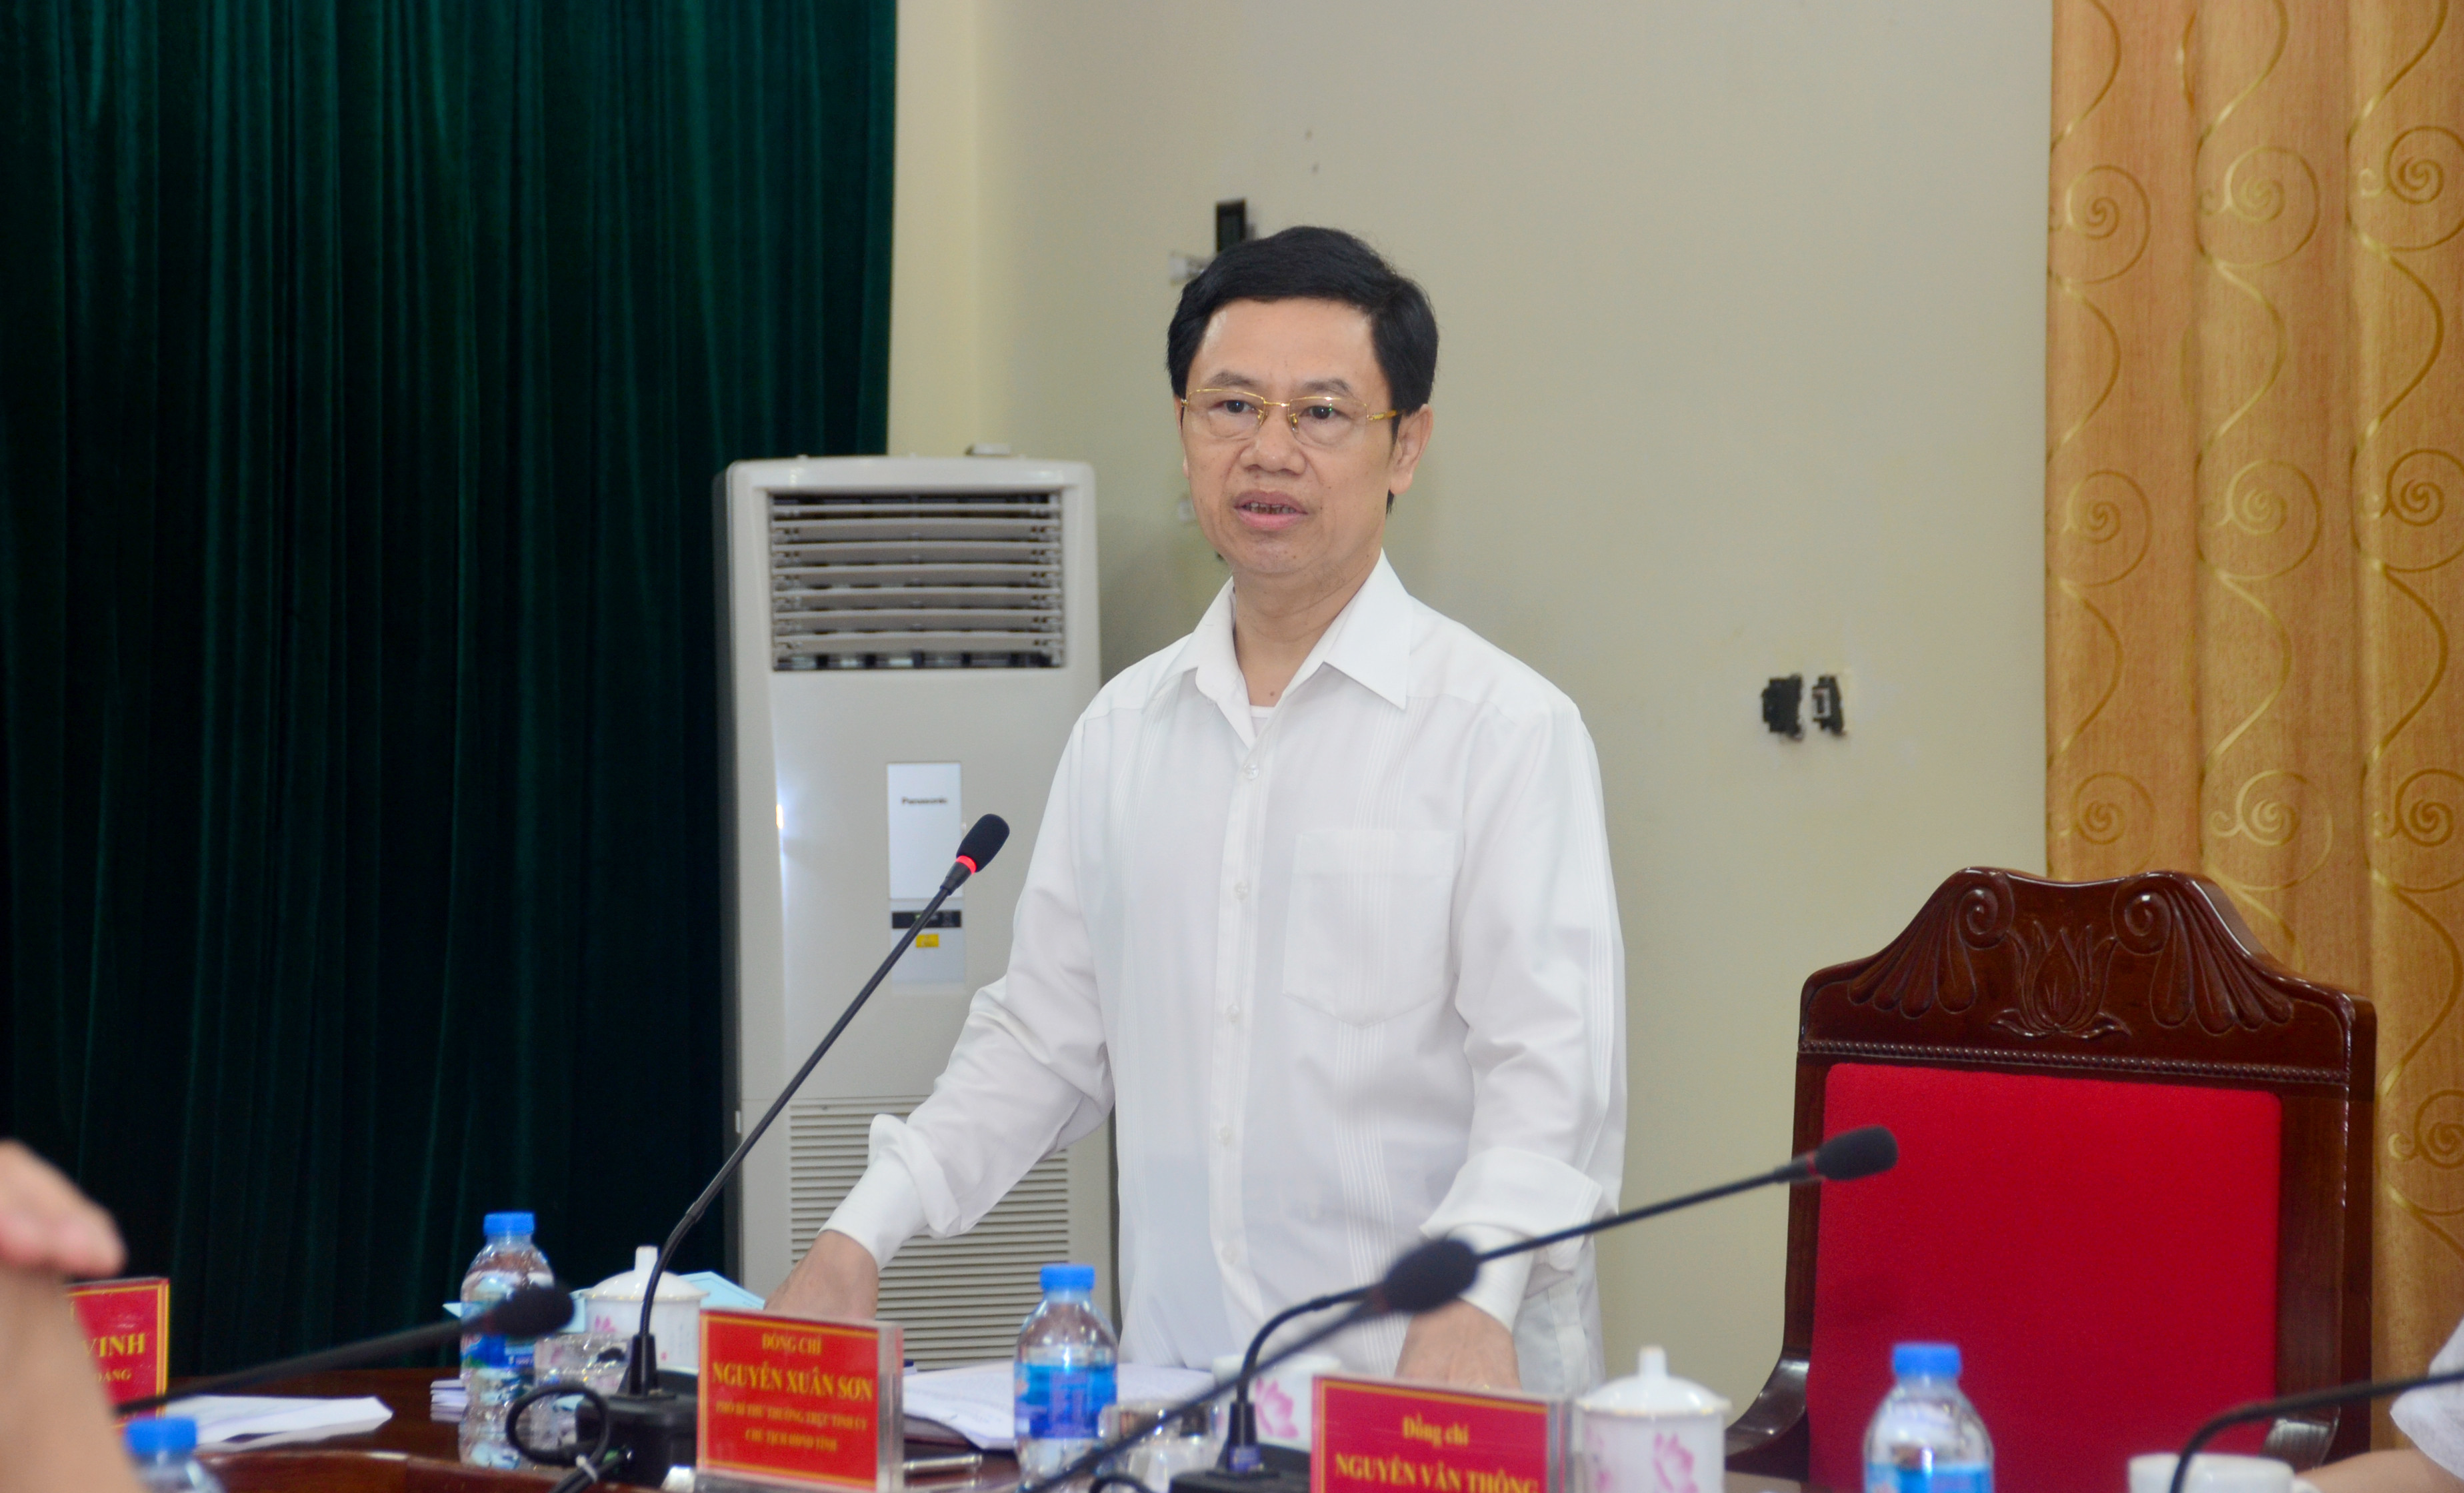 Phó Bí thư Thường trực Tỉnh ủy Nguyễn Xuân Sơn phát biểu tại cuộc làm việc. Ảnh: Thành Duy